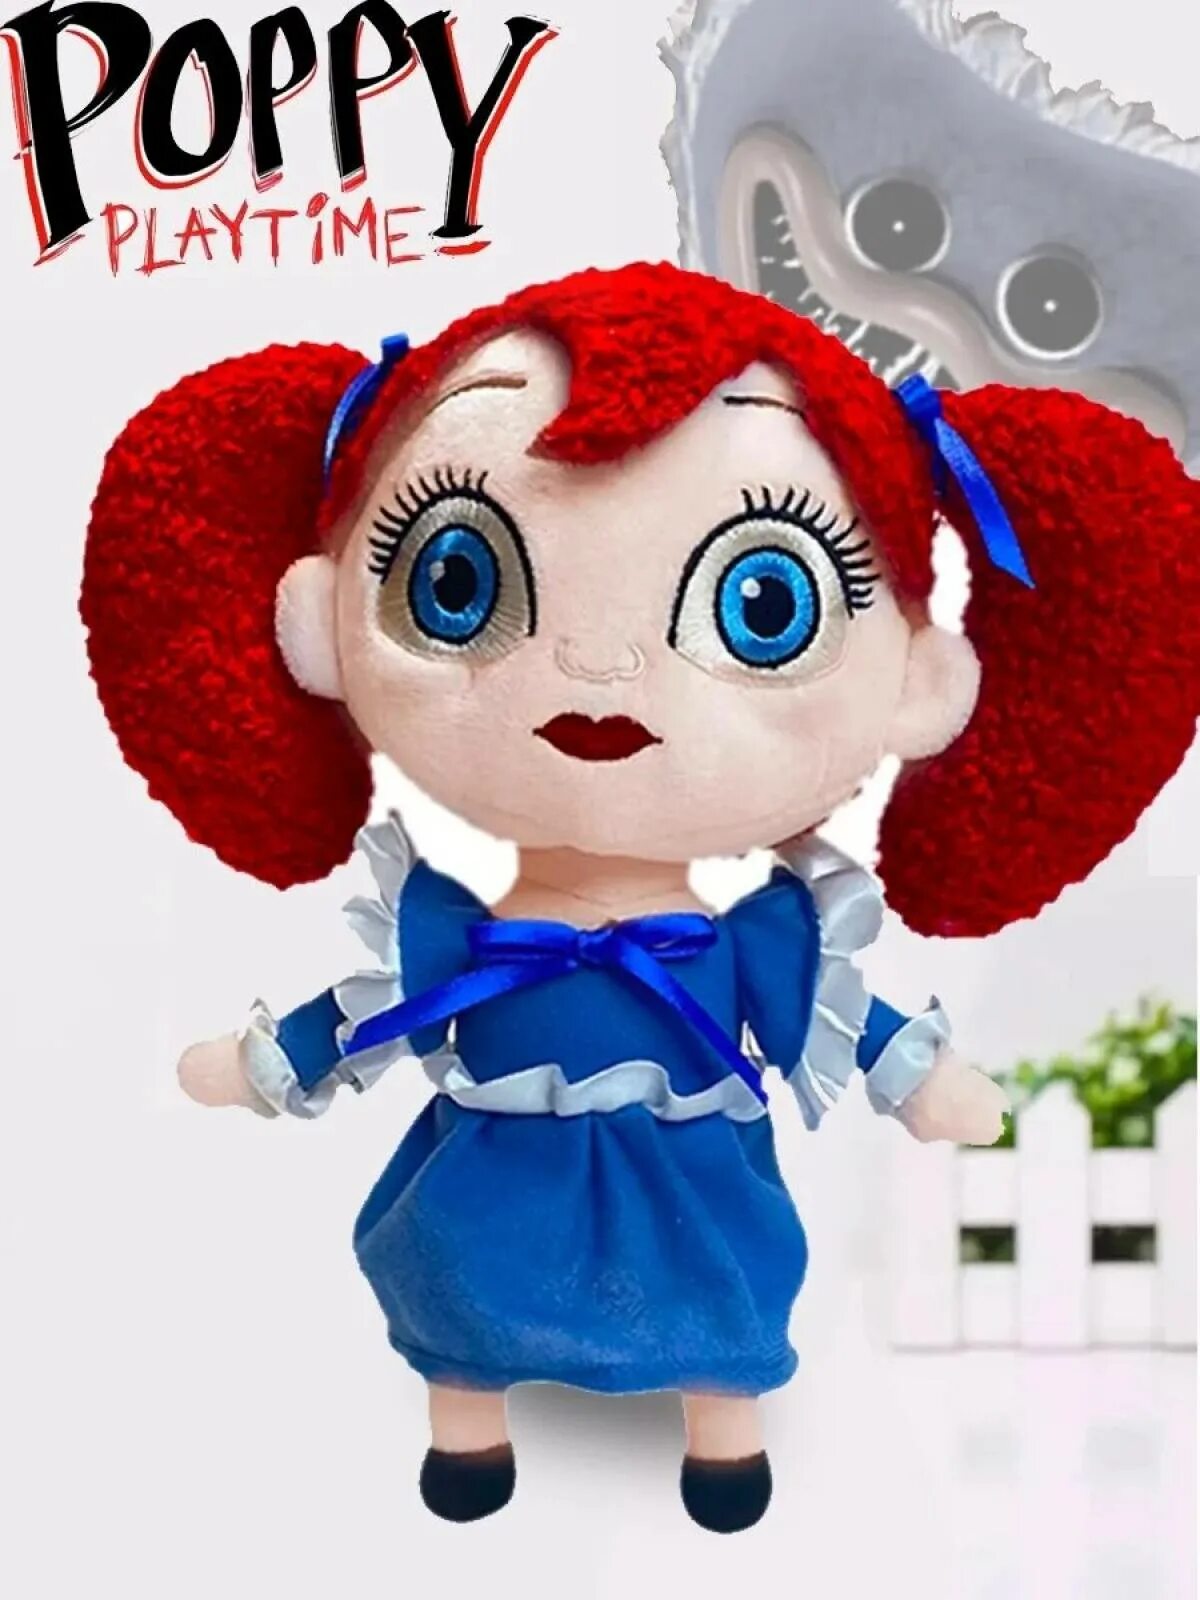 Игрушка попиплейтайм 3. Поппи Плэйтайм. Кукла из Поппи Плейтайм. Кукла Поппи Хагги Вагги Poppy Playtime. Поппи Плейтайм игрушка.